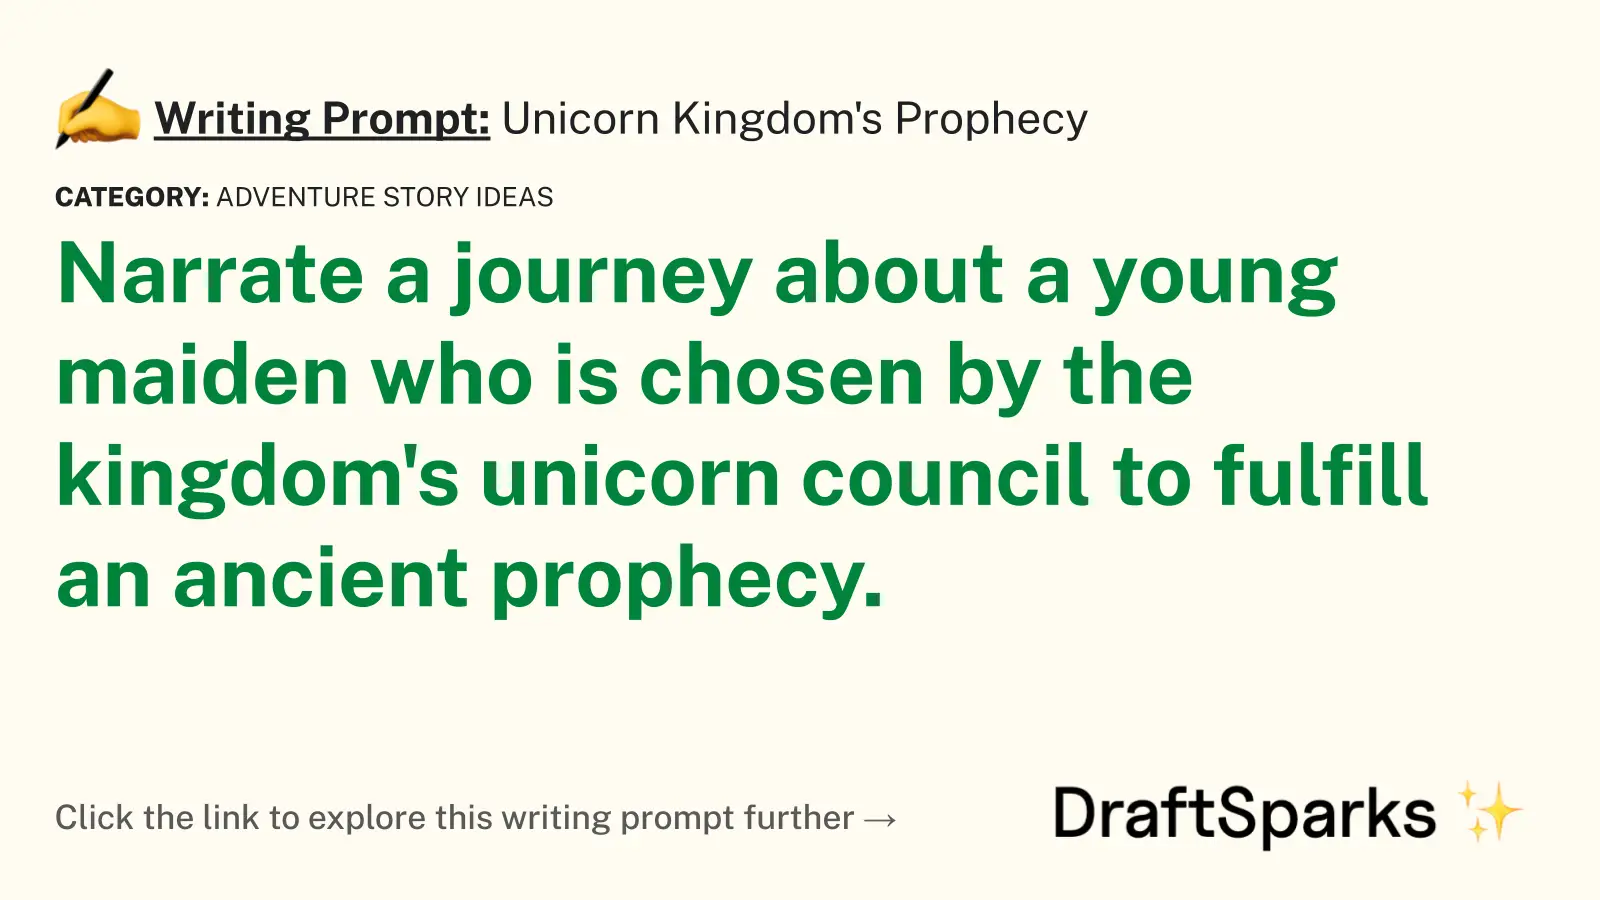 Unicorn Kingdom’s Prophecy